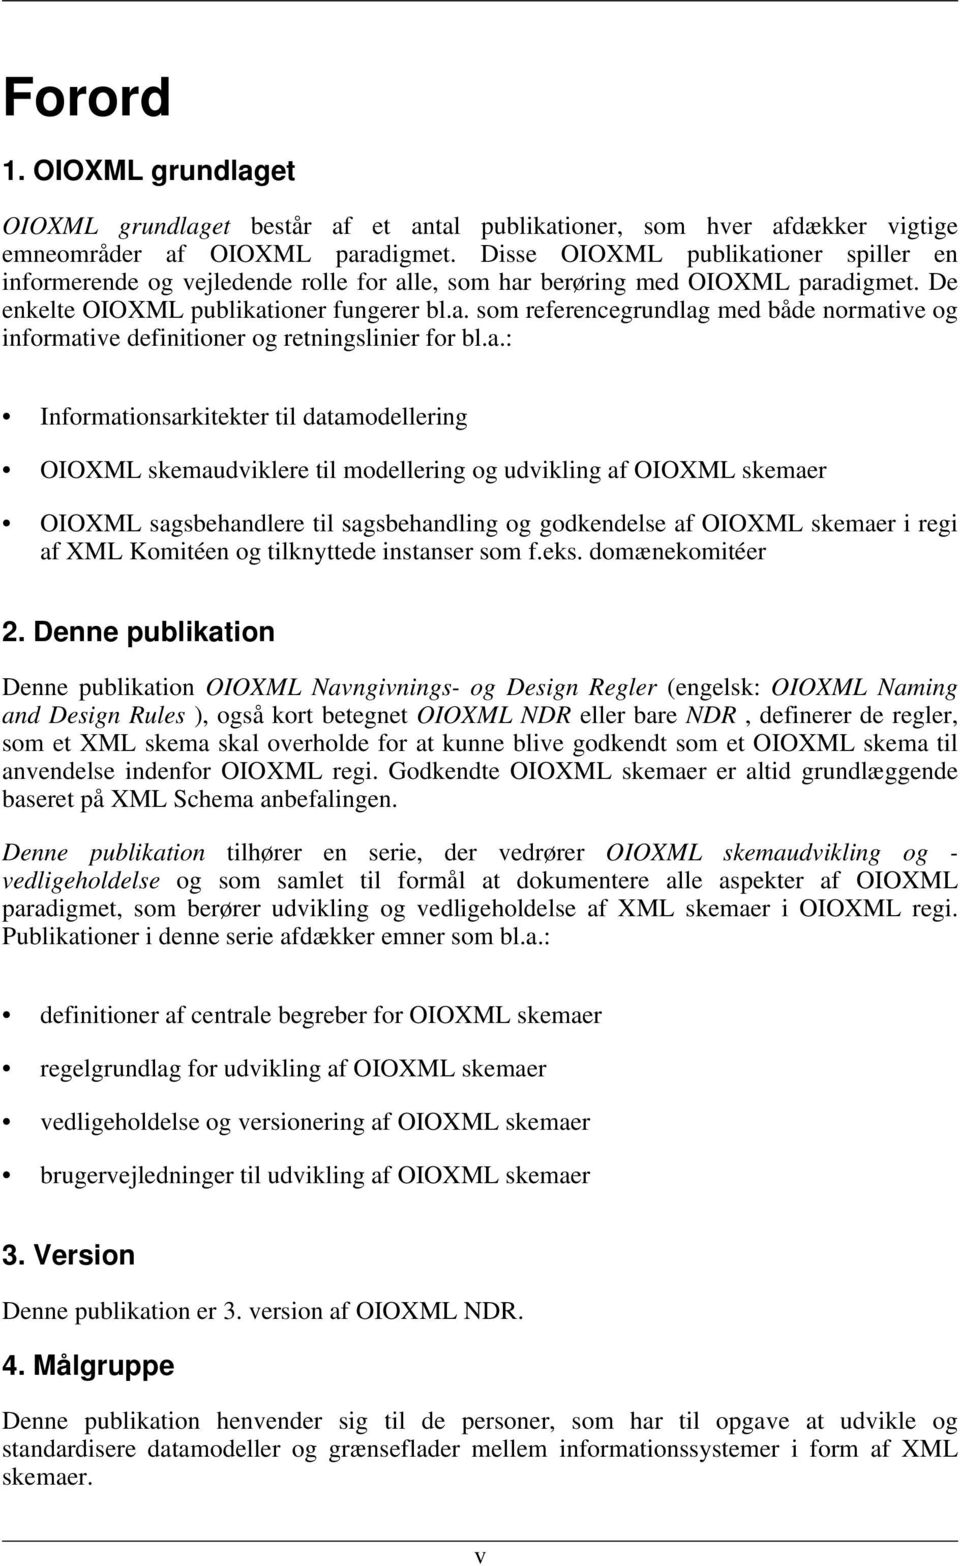 a.: Informationsarkitekter til datamodellering OIOXML skemaudviklere til modellering og udvikling af OIOXML skemaer OIOXML sagsbehandlere til sagsbehandling og godkendelse af OIOXML skemaer i regi af